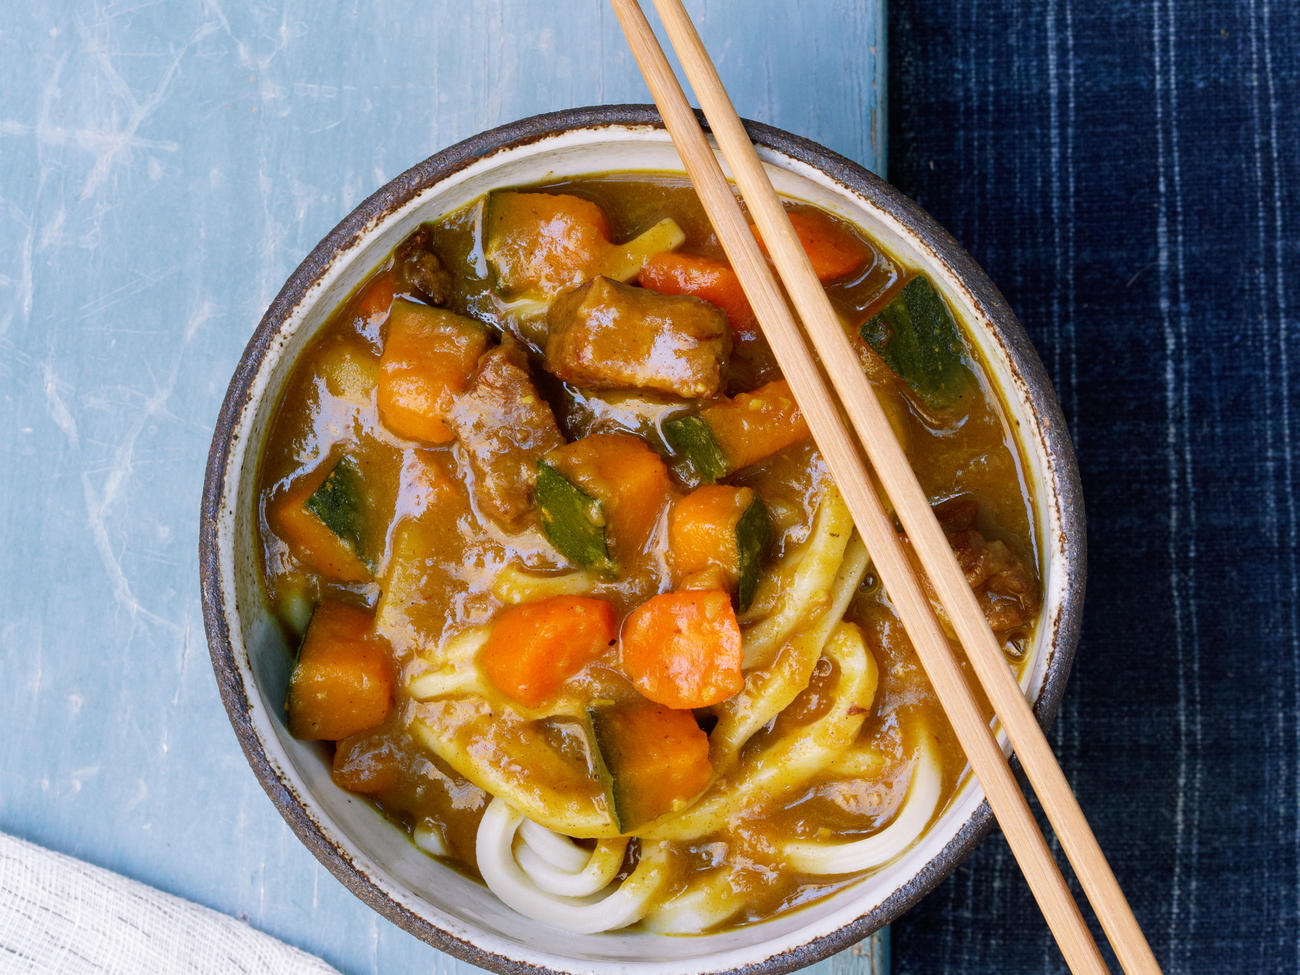 10 Best Asian Noodle Recipes